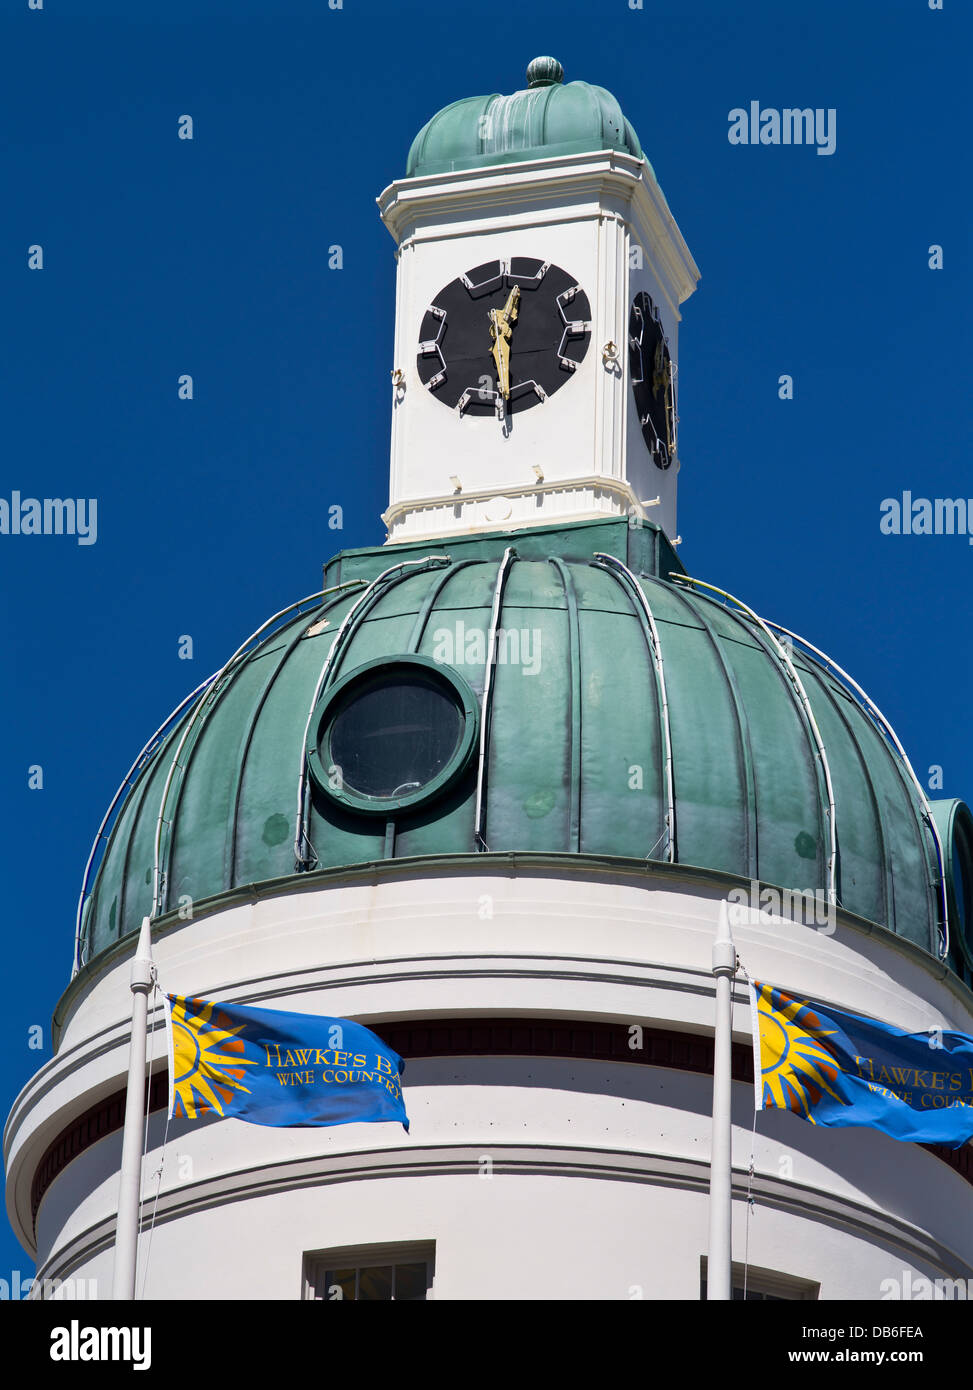 dh NAPIER NOUVELLE-ZÉLANDE Dome TG bâtiment dôme toit et horloge art déco tour Banque D'Images